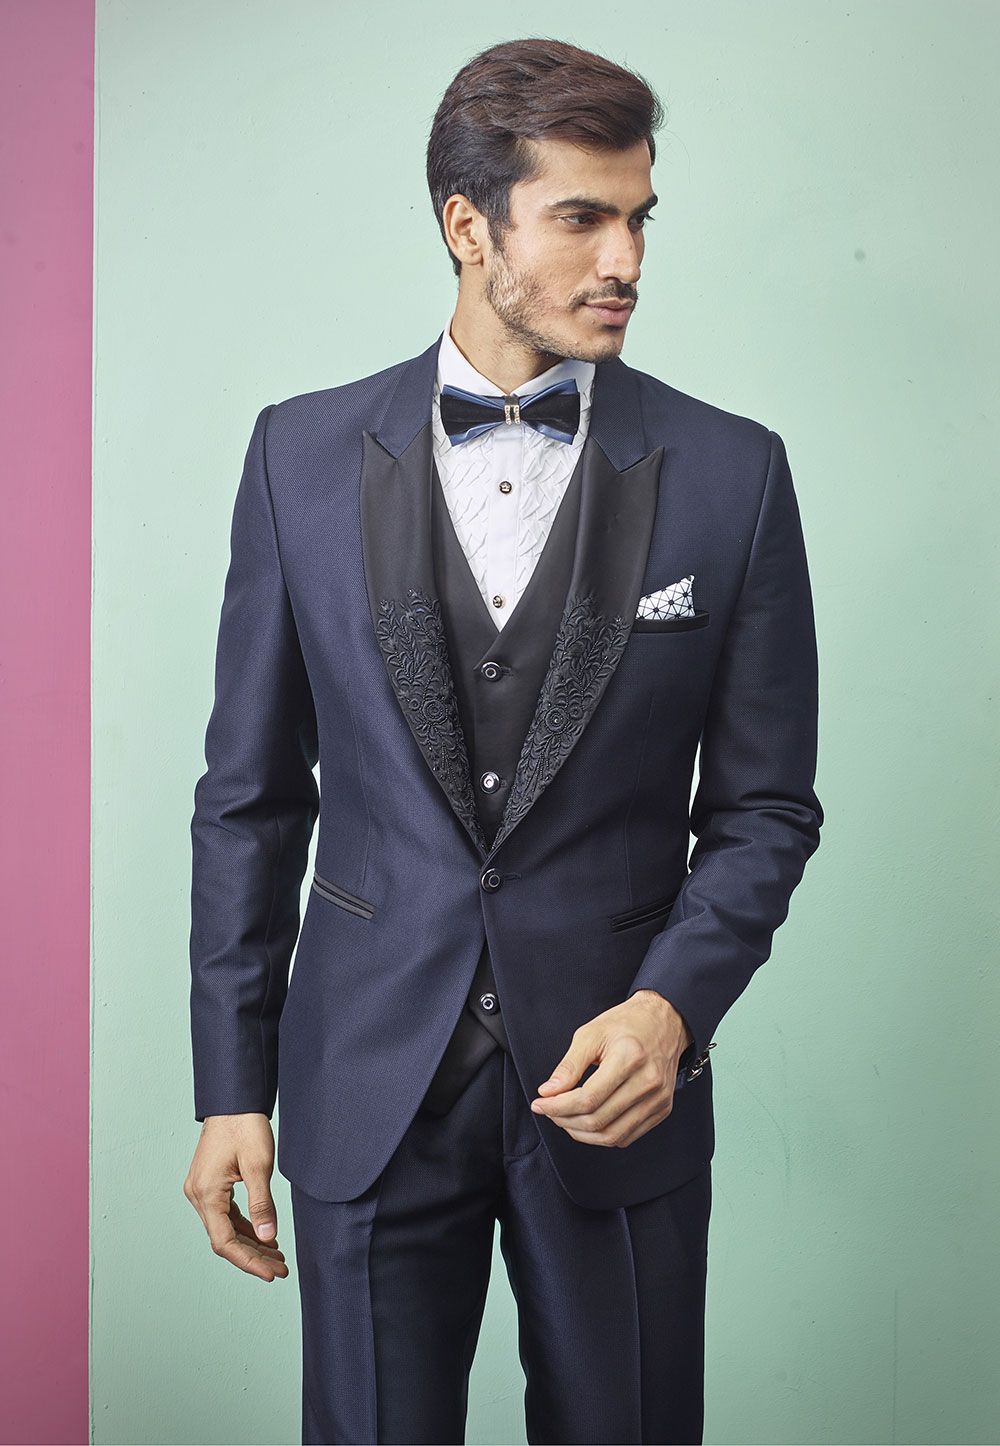 Indian Designer Men's Suit Blue Colour.